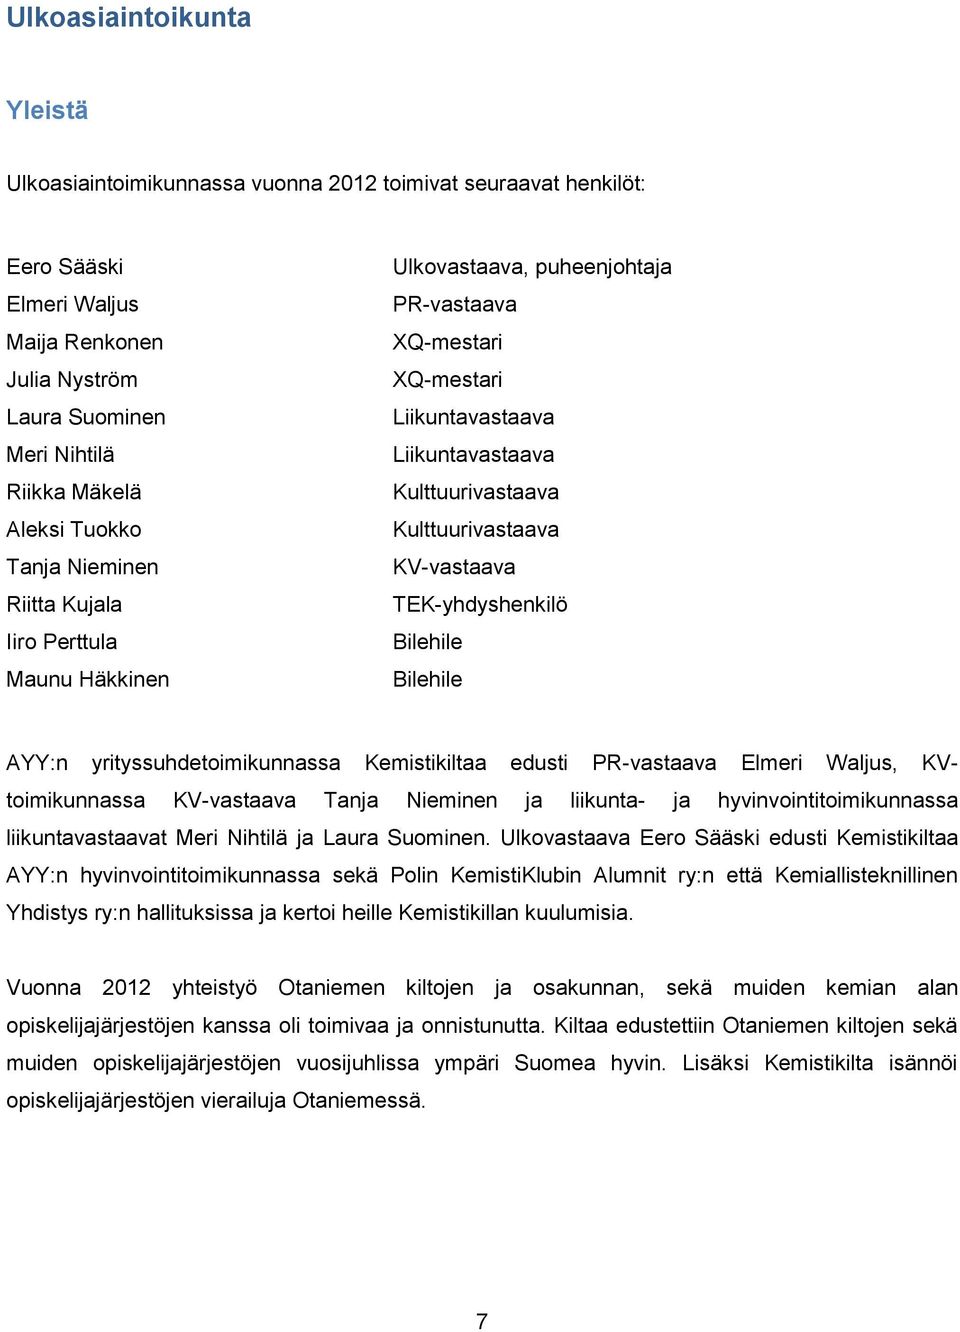 Bilehile AYY:n yrityssuhdetoimikunnassa Kemistikiltaa edusti PR-vastaava Elmeri Waljus, KVtoimikunnassa KV-vastaava Tanja Nieminen ja liikunta- ja hyvinvointitoimikunnassa liikuntavastaavat Meri